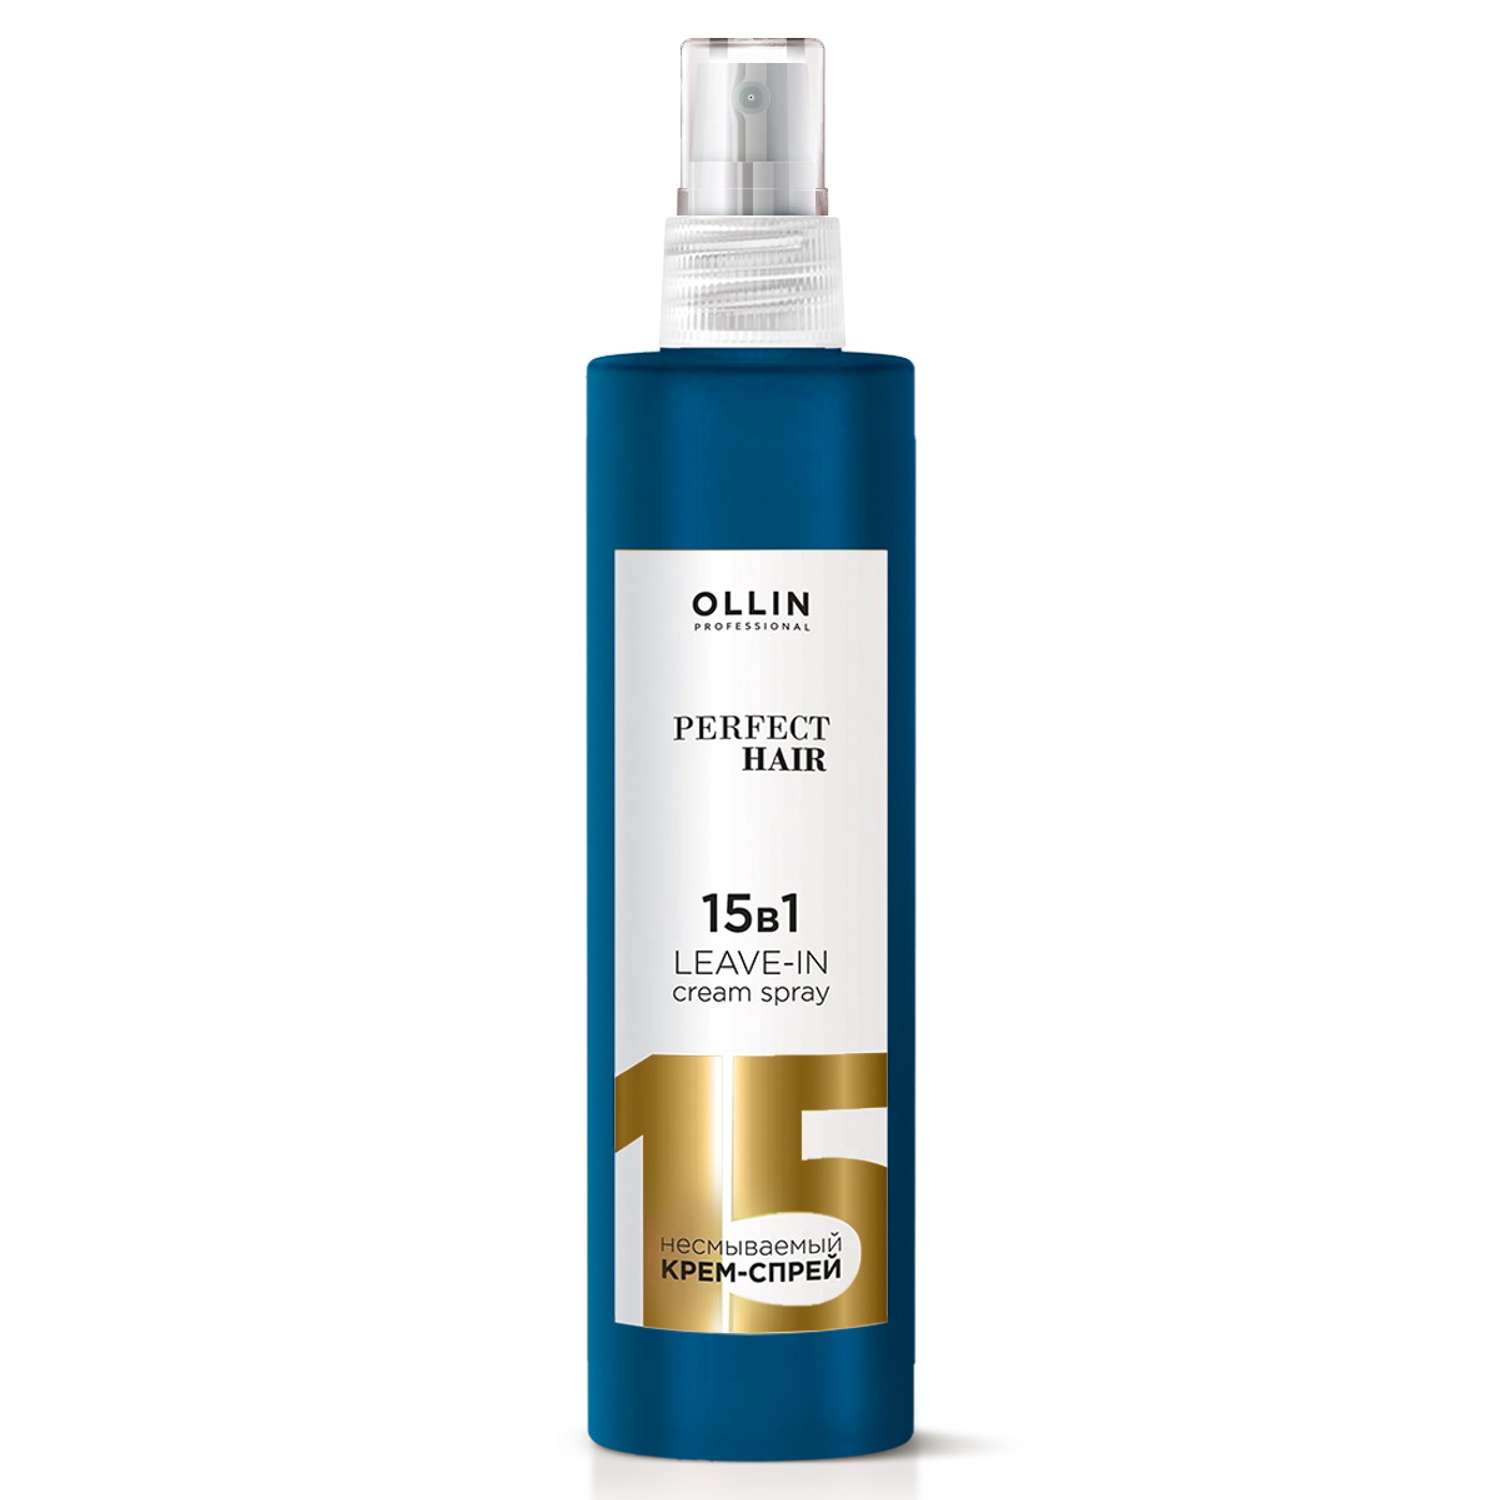 Крем-спрей Ollin PERFECT HAIR многофункциональный 15 в 1 несмываемый 15в1 для волос 250 мл - фото 1